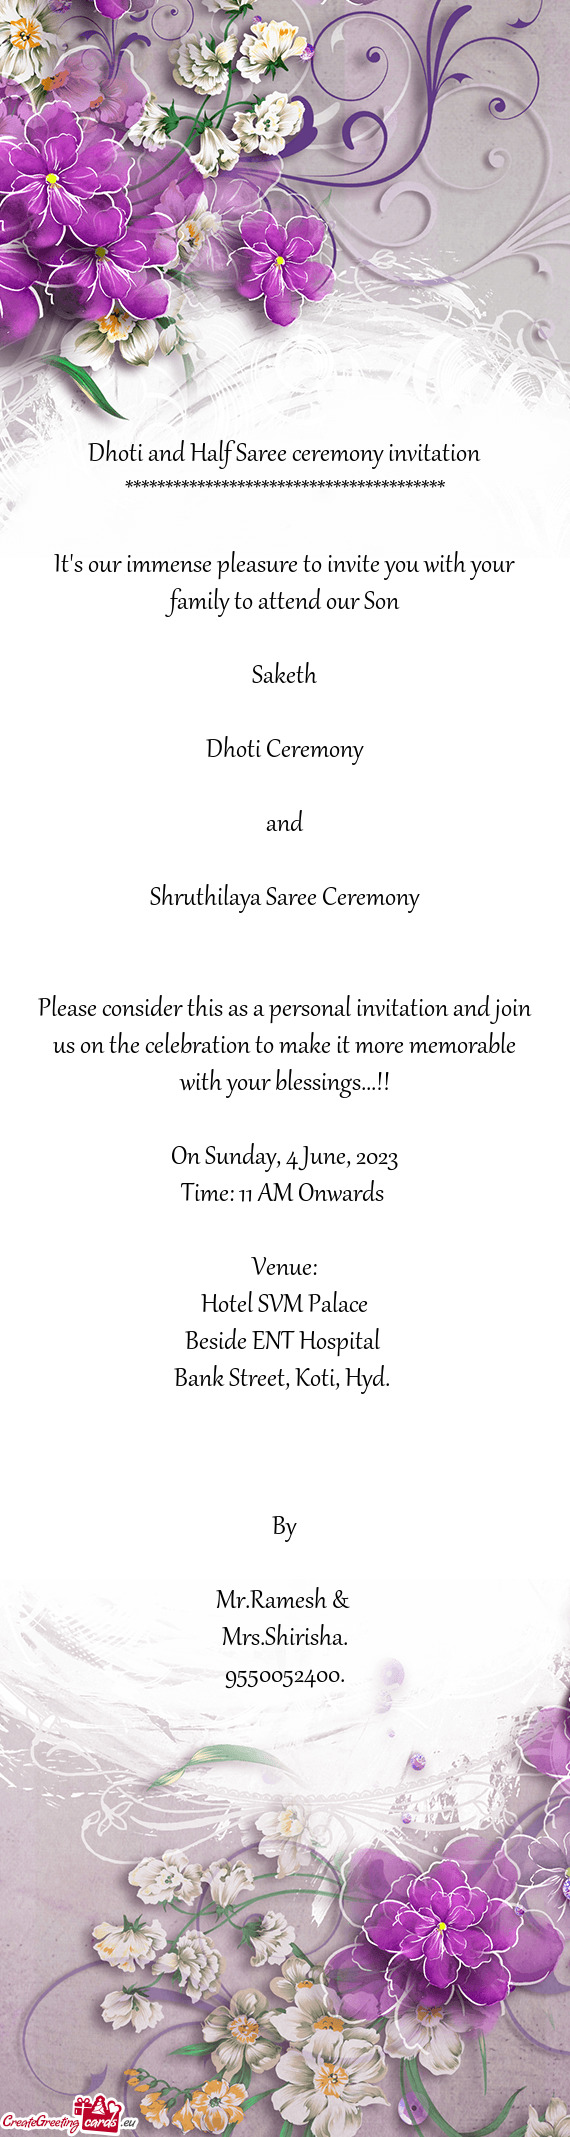 Shruthilaya Saree Ceremony